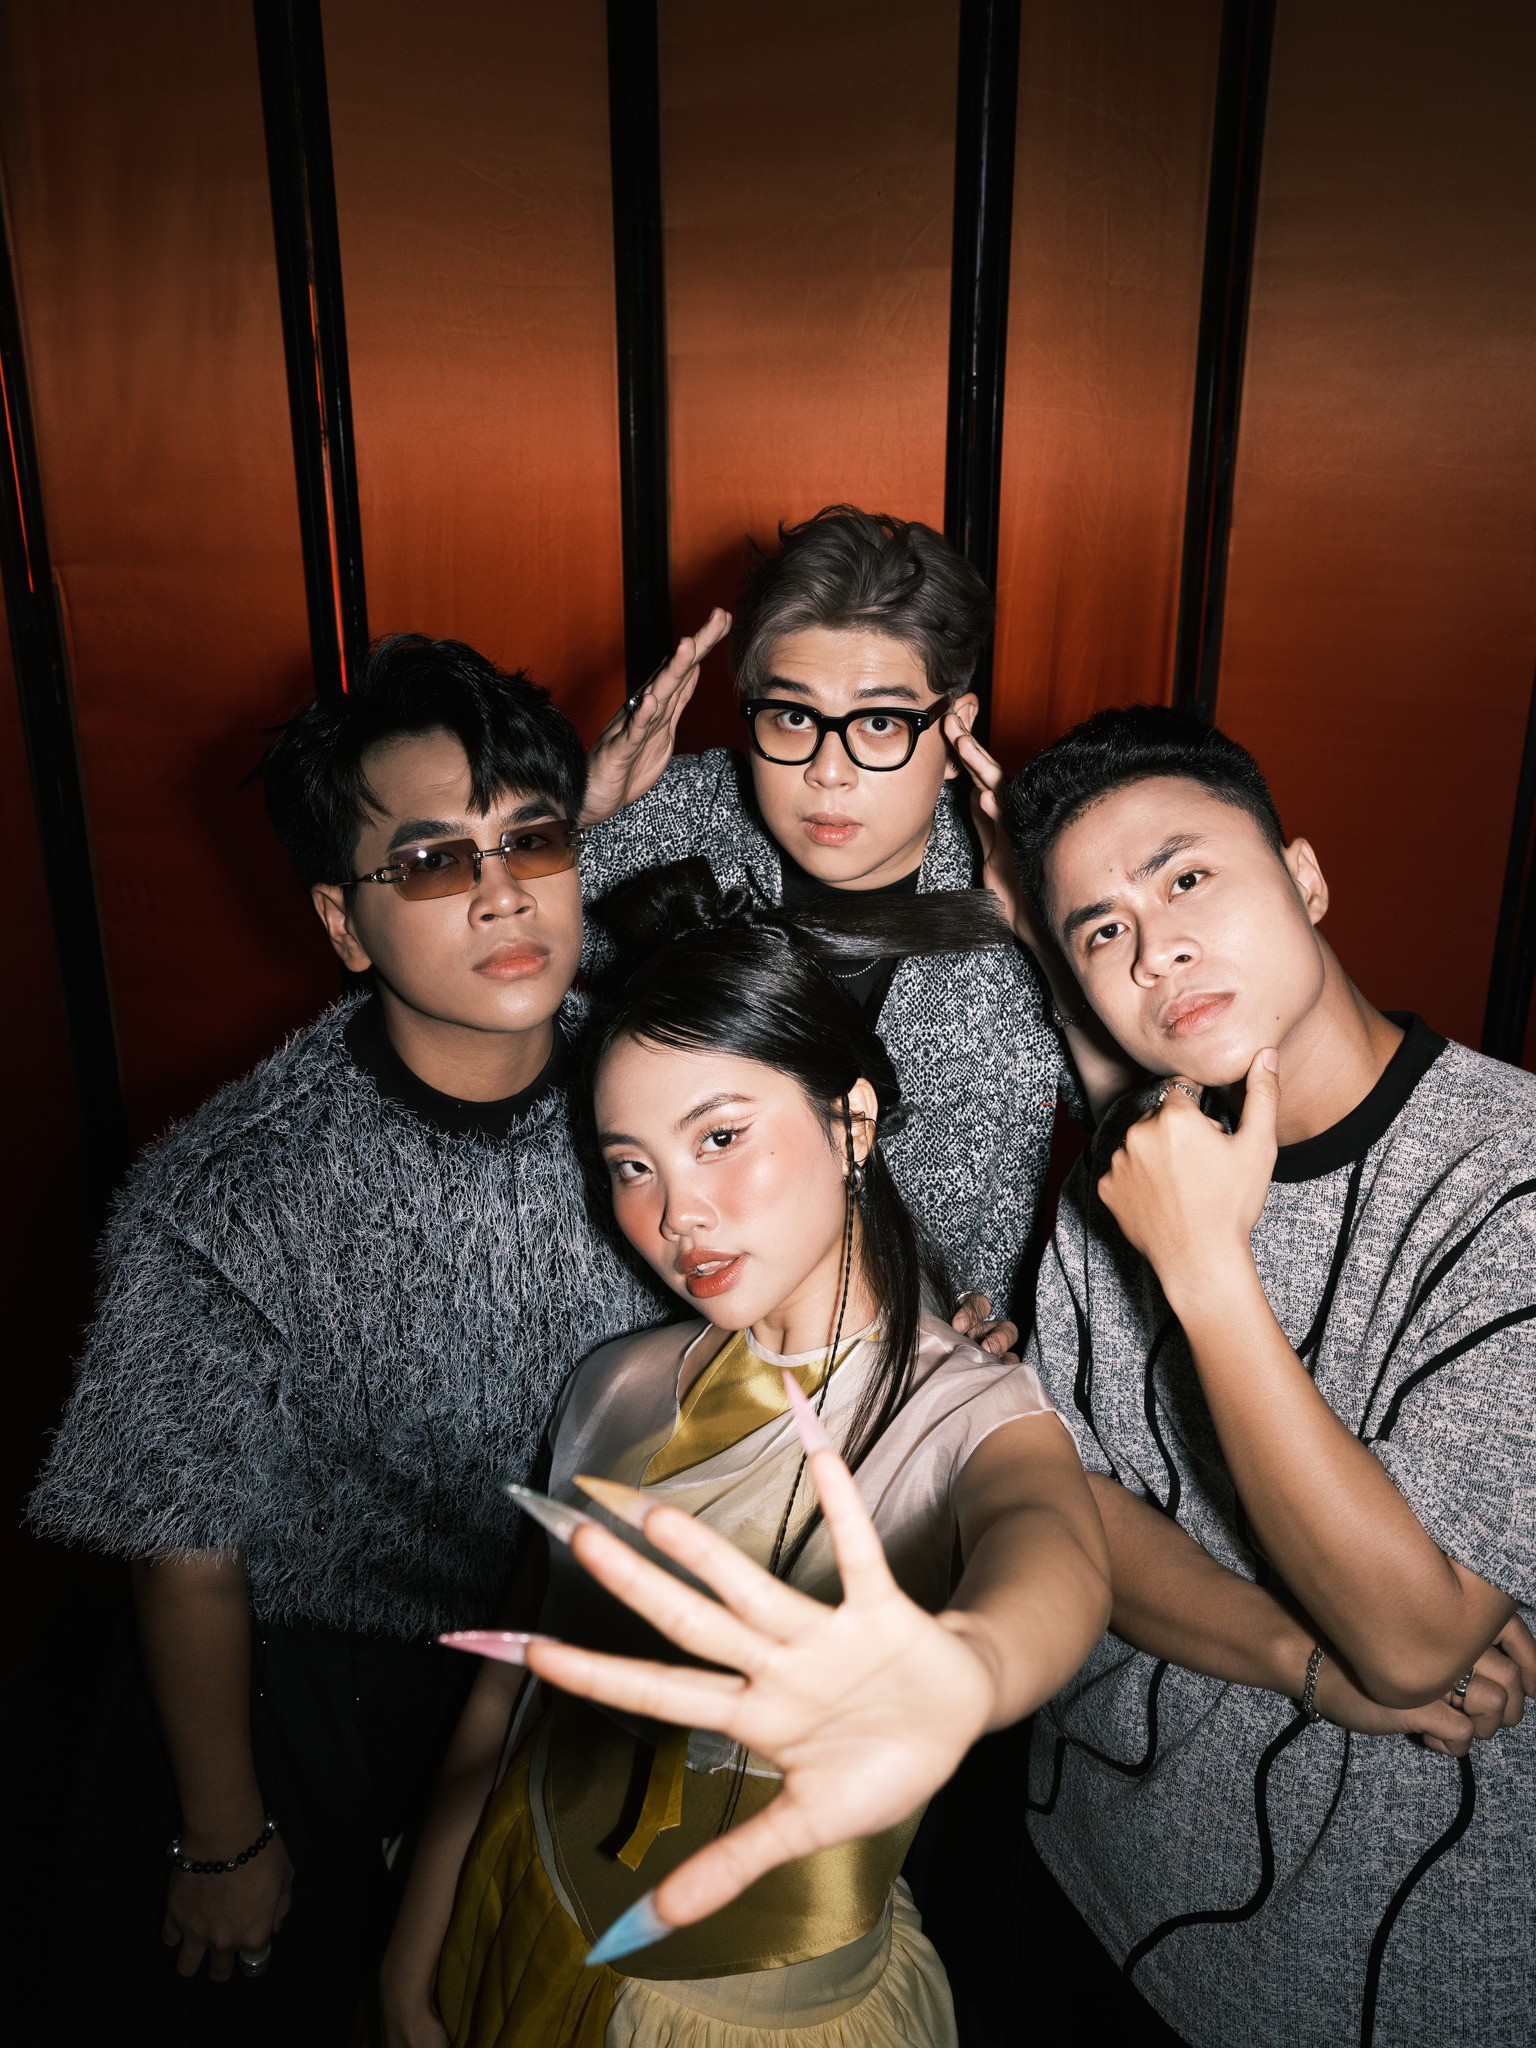 Ca sĩ Phương Mỹ Chi kết hợp cùng DTAP - nhóm producer đứng sau thành công của ca sĩ Hoàng Thùy Linh với những âm hưởng dân gian trong âm nhạc.